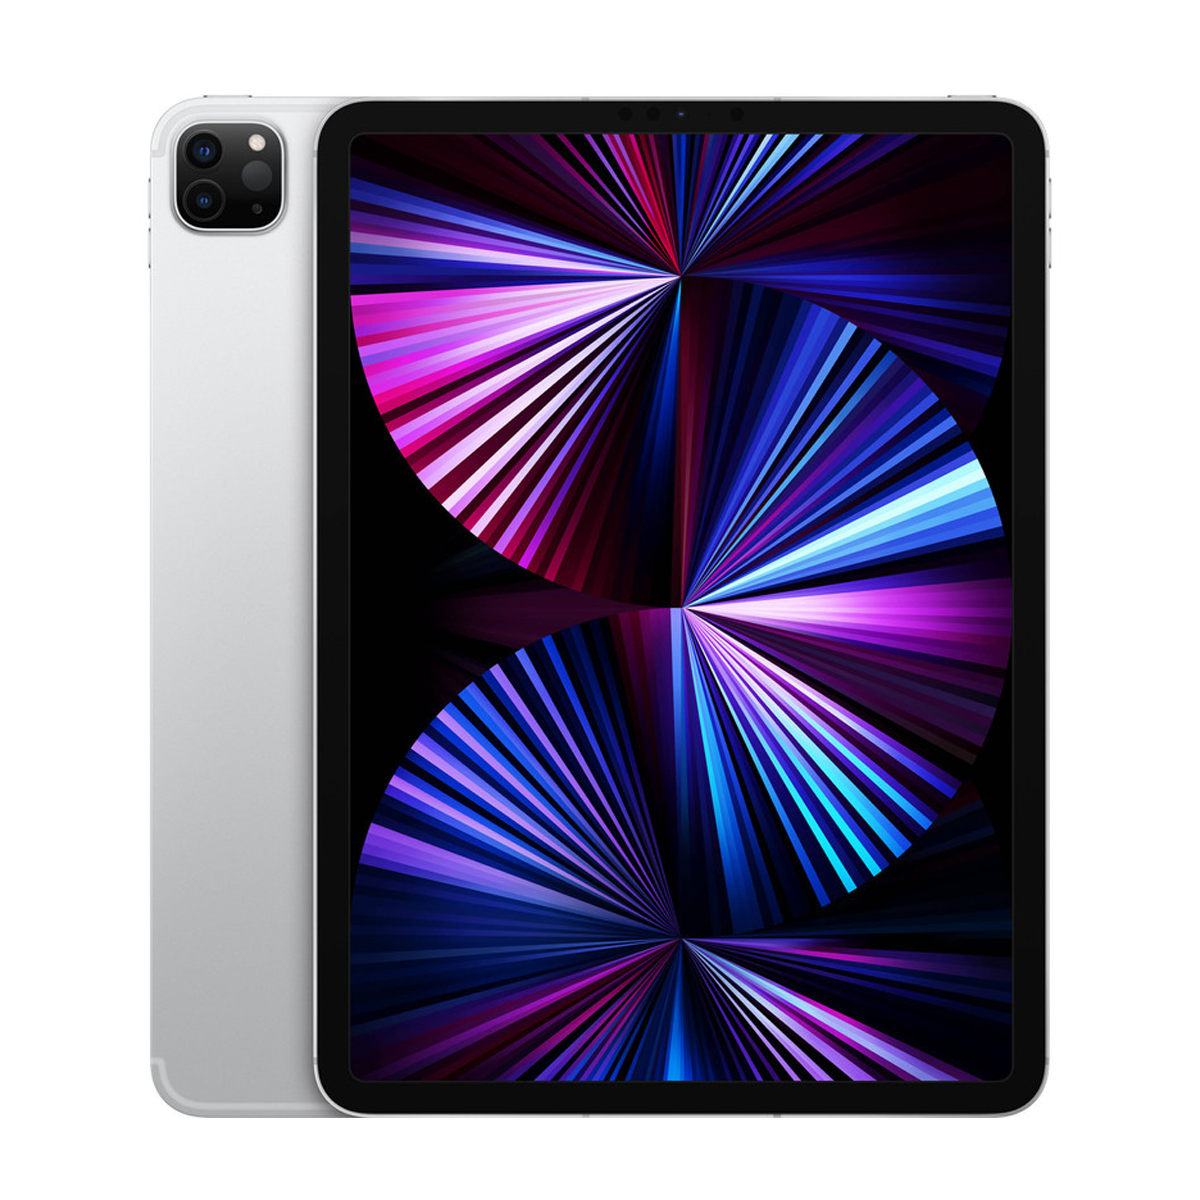 تبلت اپل مدل iPad Pro 11 inch 2021 WiFi ظرفیت 256 گیگابایت - رم 8 گیگابایت